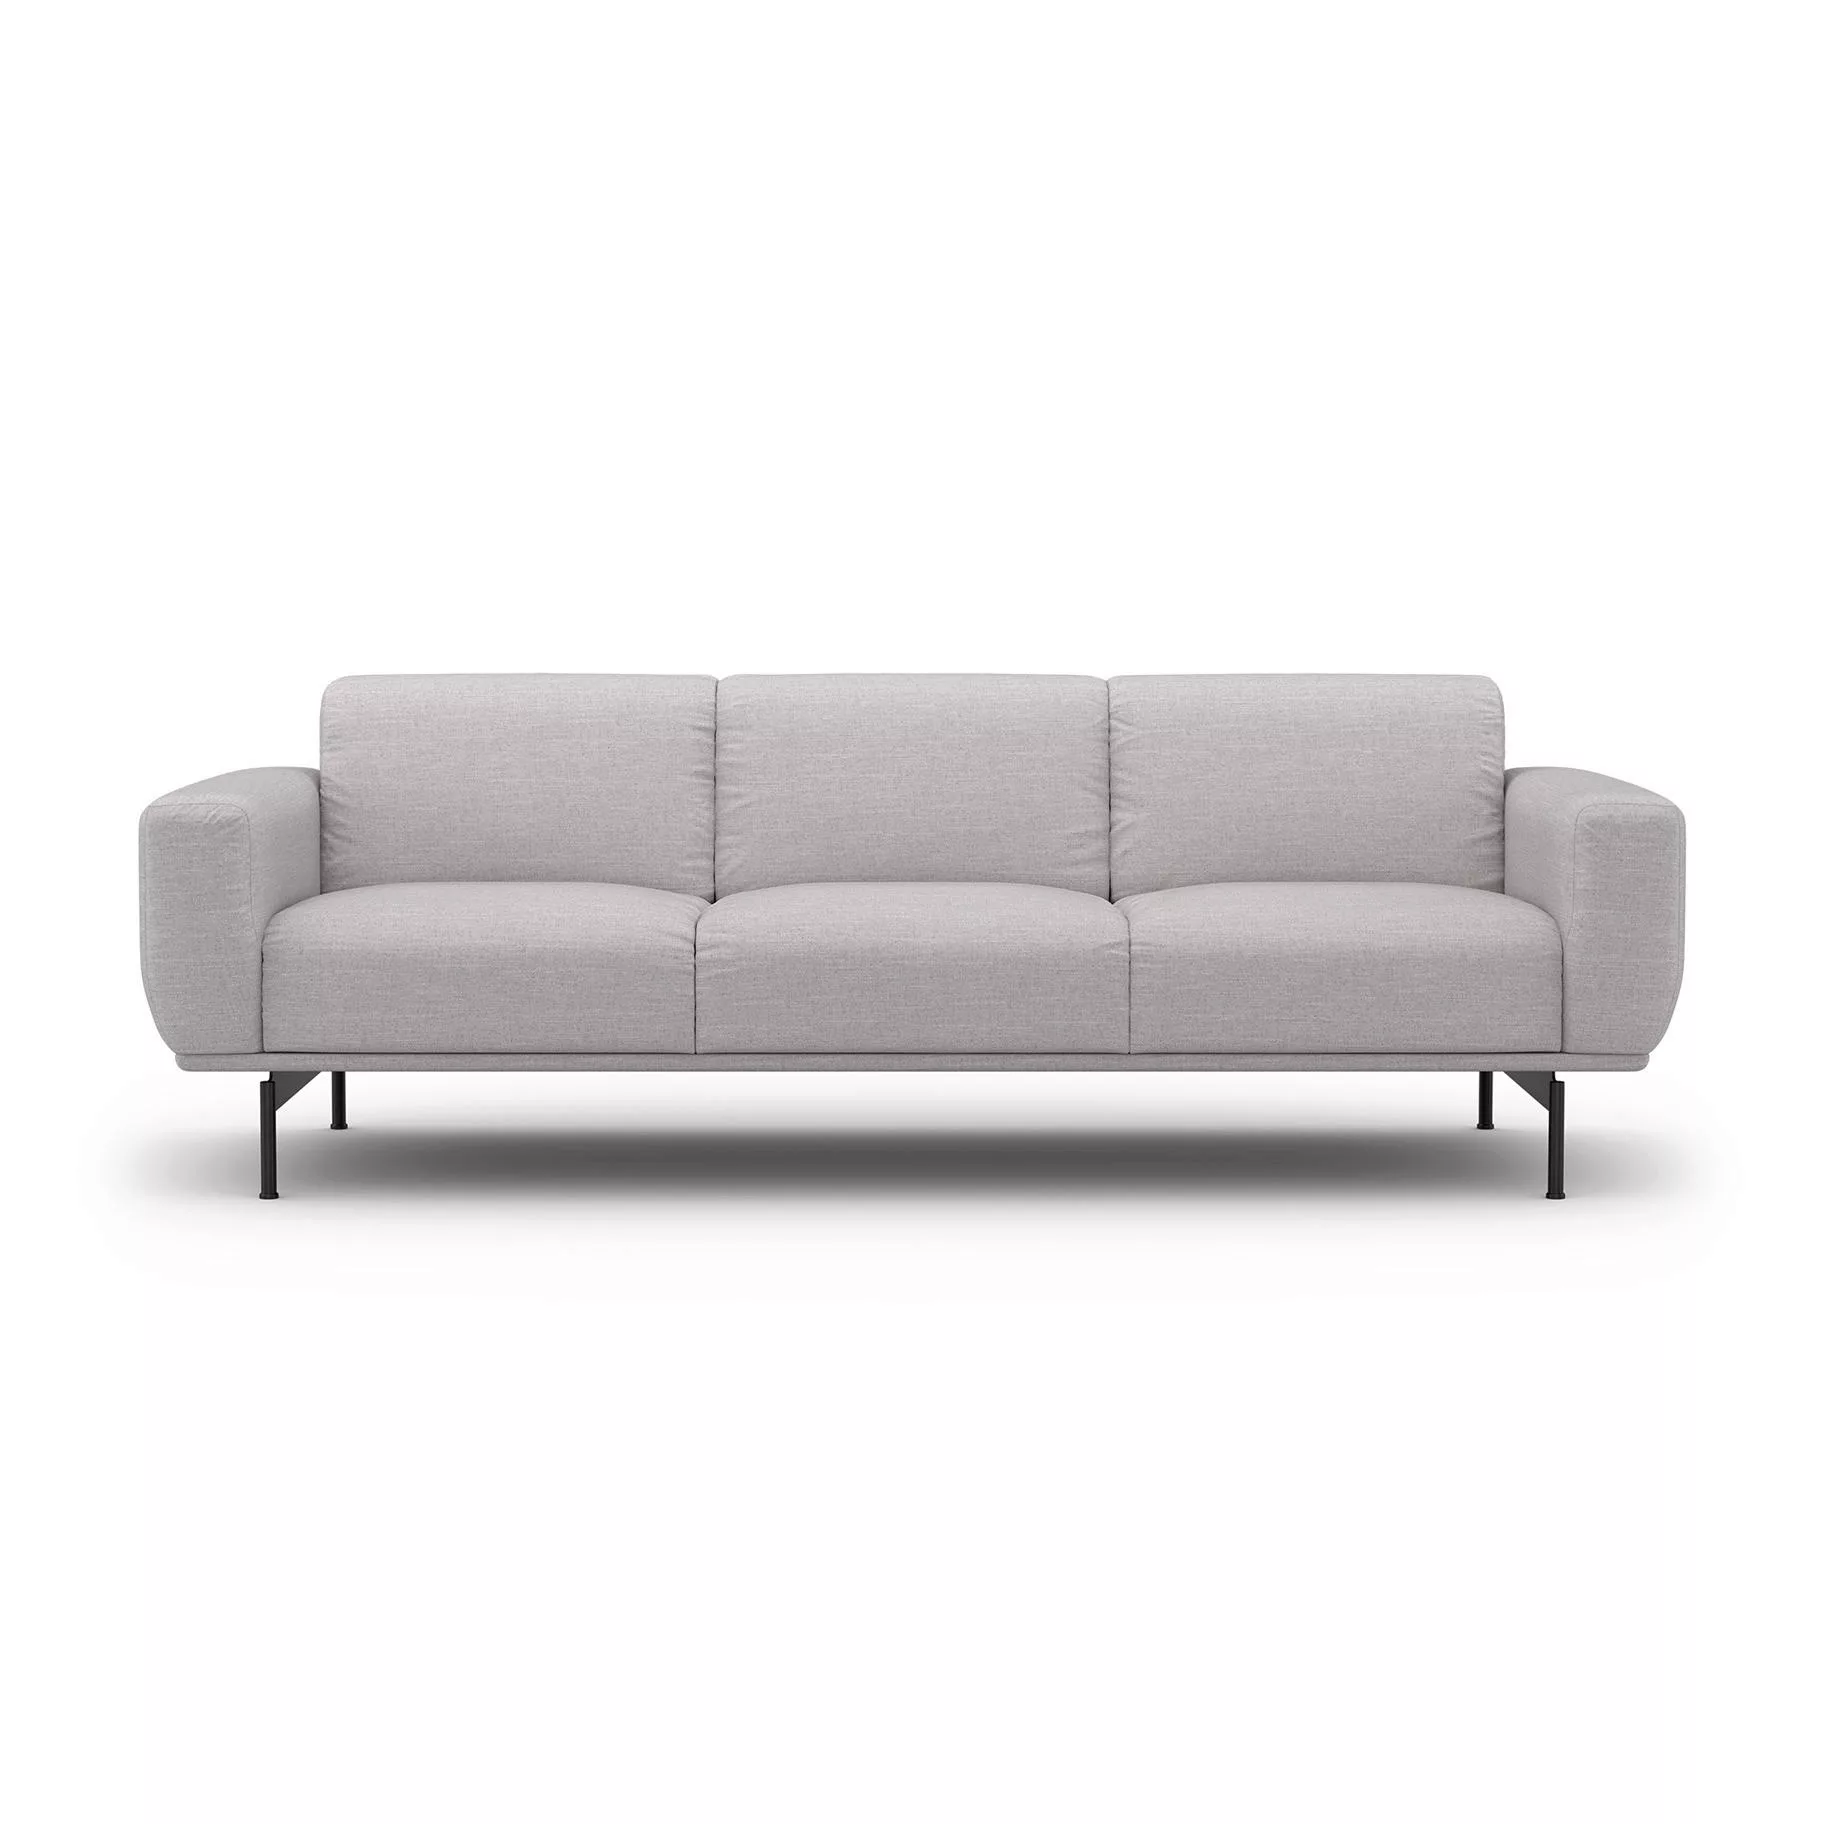 Sit with us - Air 3-Sitzer Sofa mit Kufengestell - hellgrau/Stoff Nobile/Bx günstig online kaufen